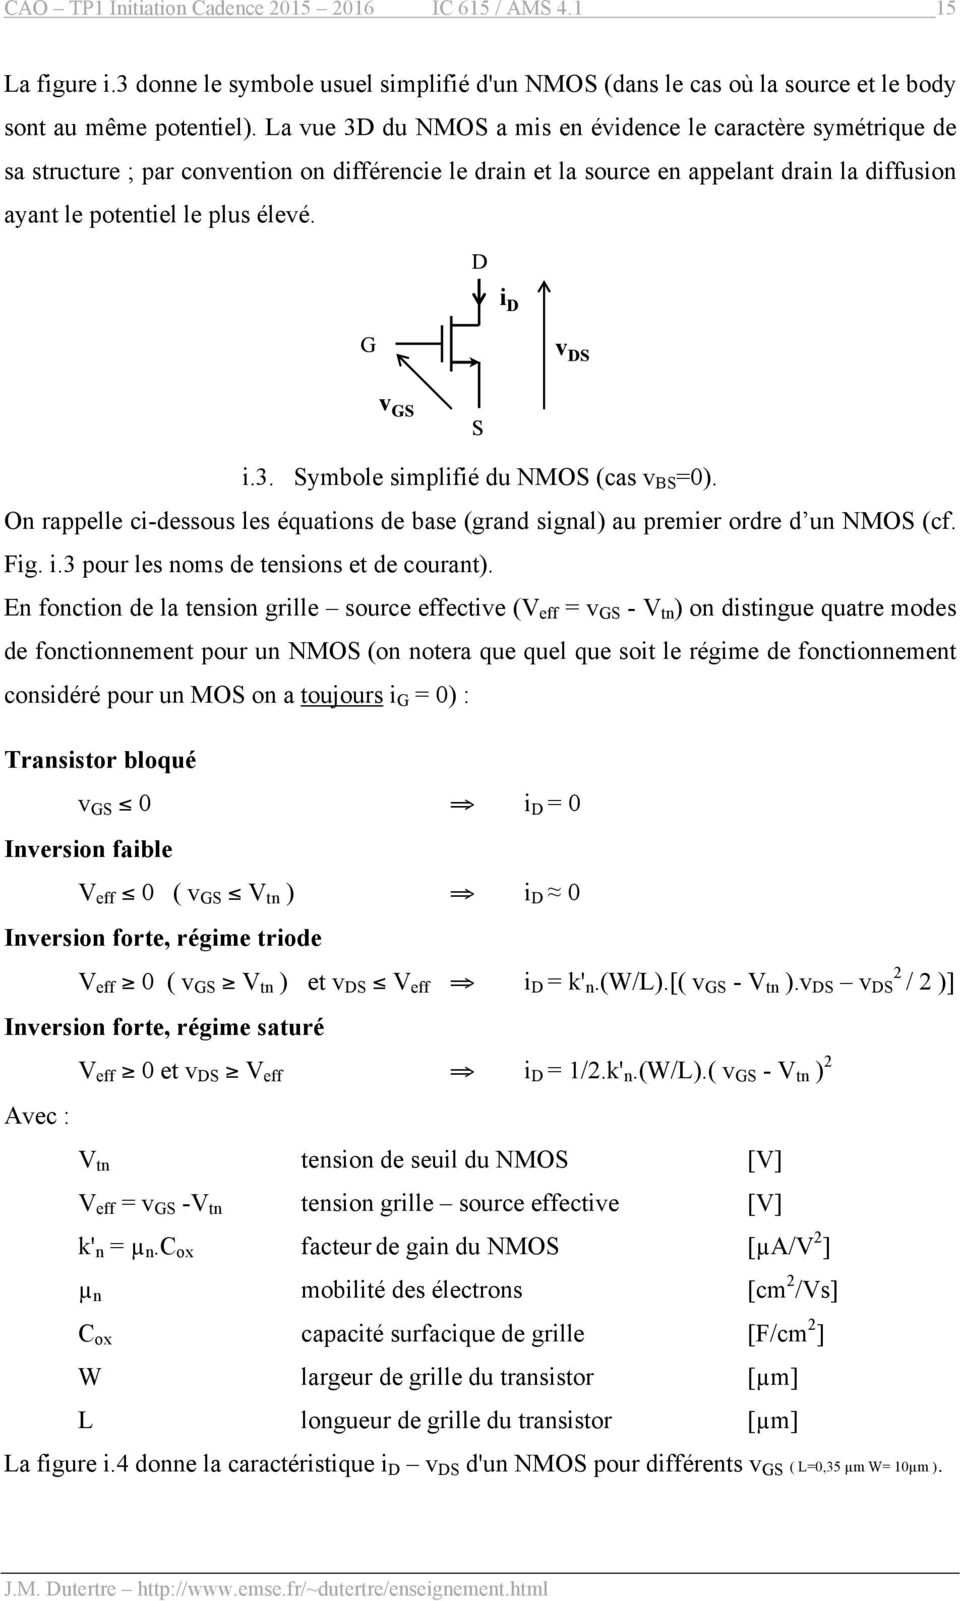 On rappelle ci-dessous les équations de base (grand signal) au premier ordre d un NMOS (cf. Fig. i.3 pour les noms de tensions et de courant).